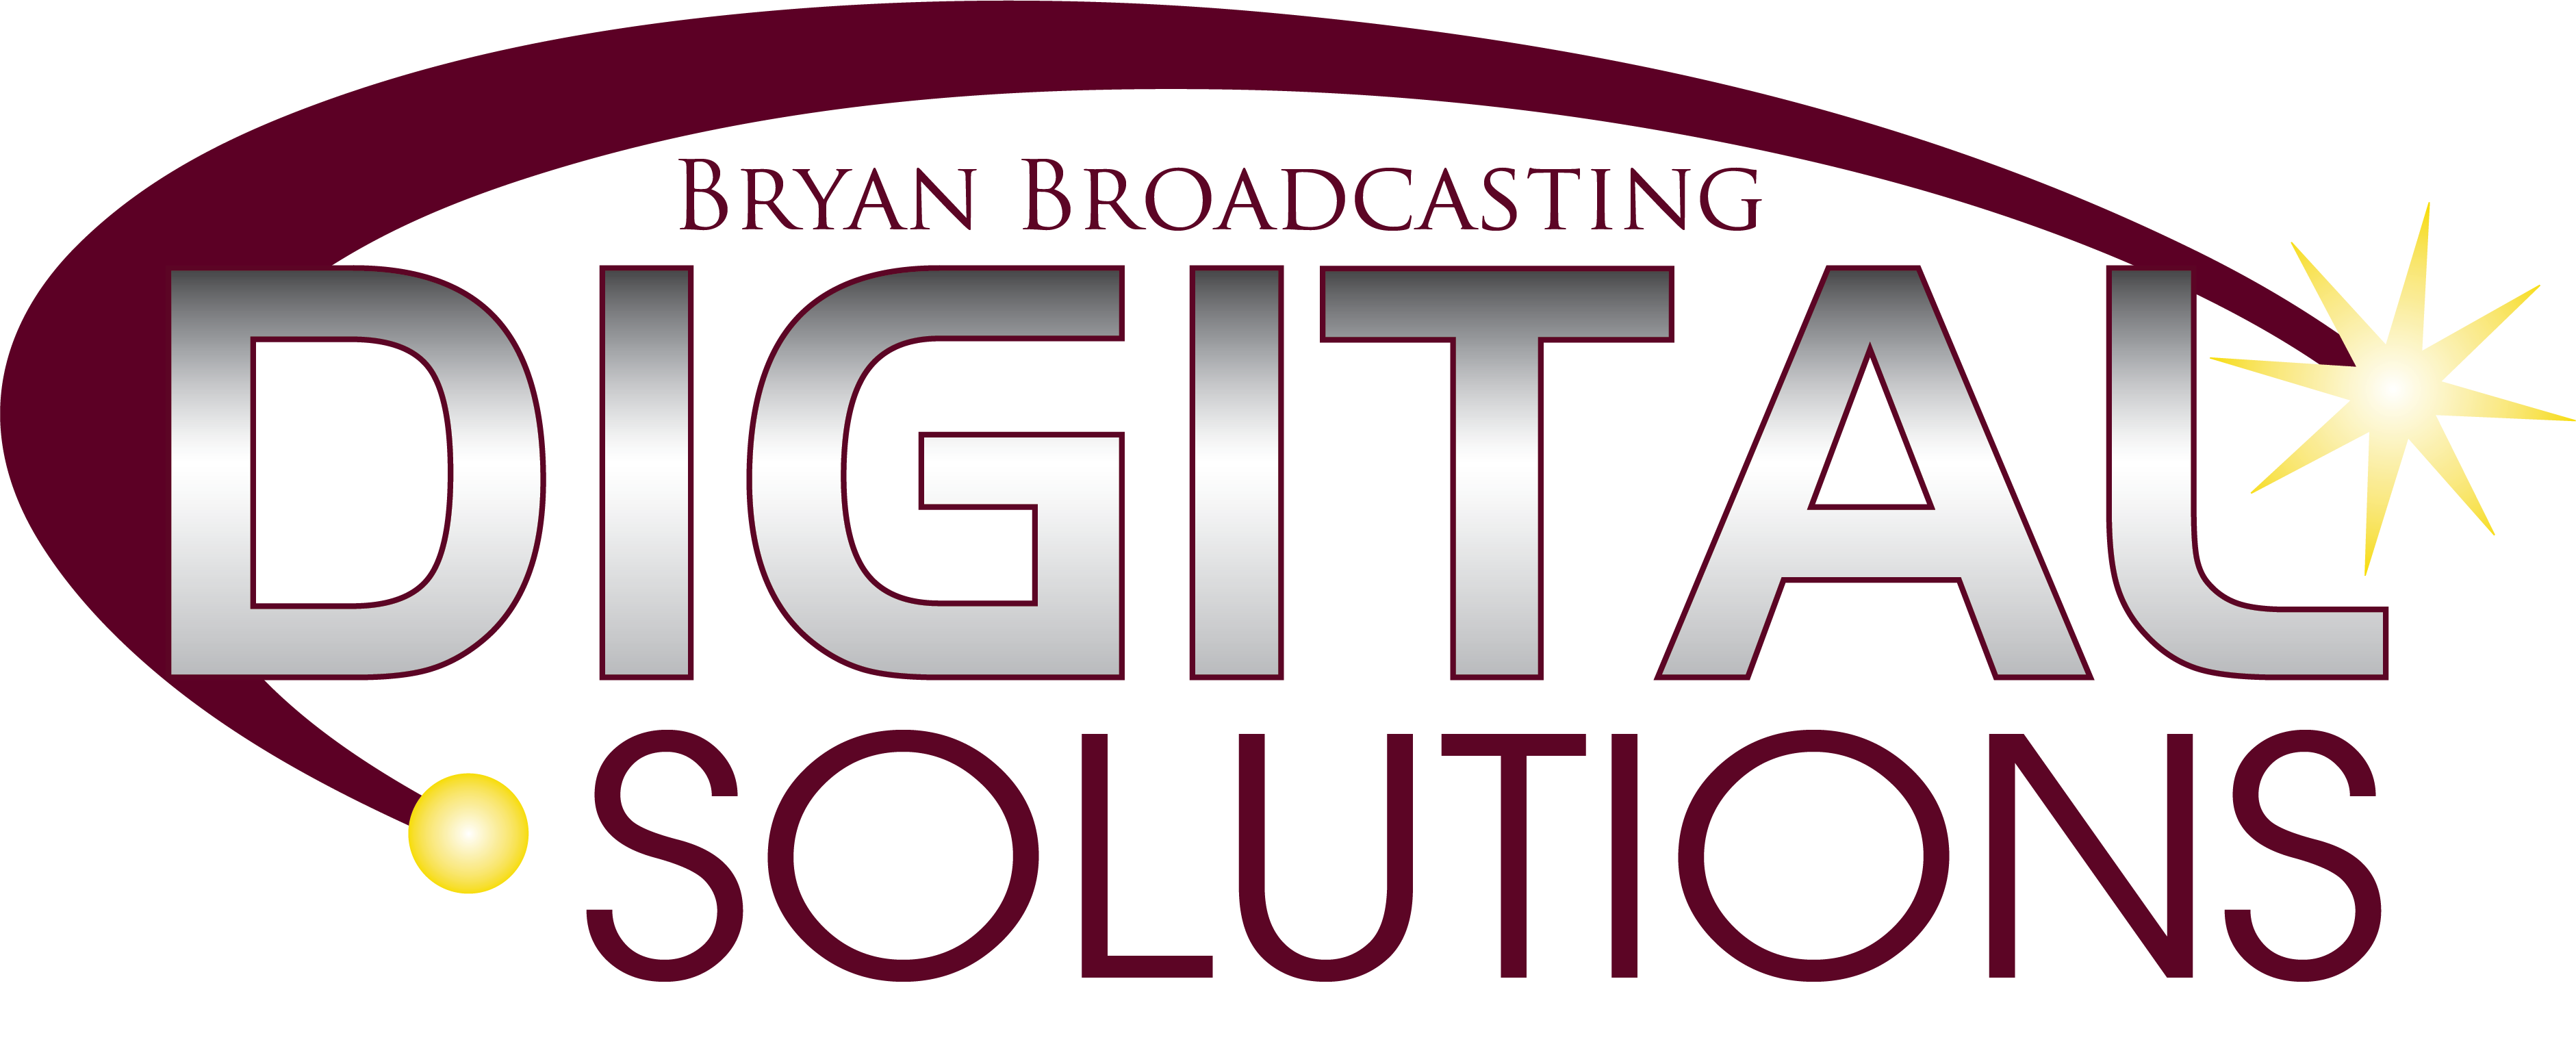 Bryan Broadcasting Digital Solutions Logo